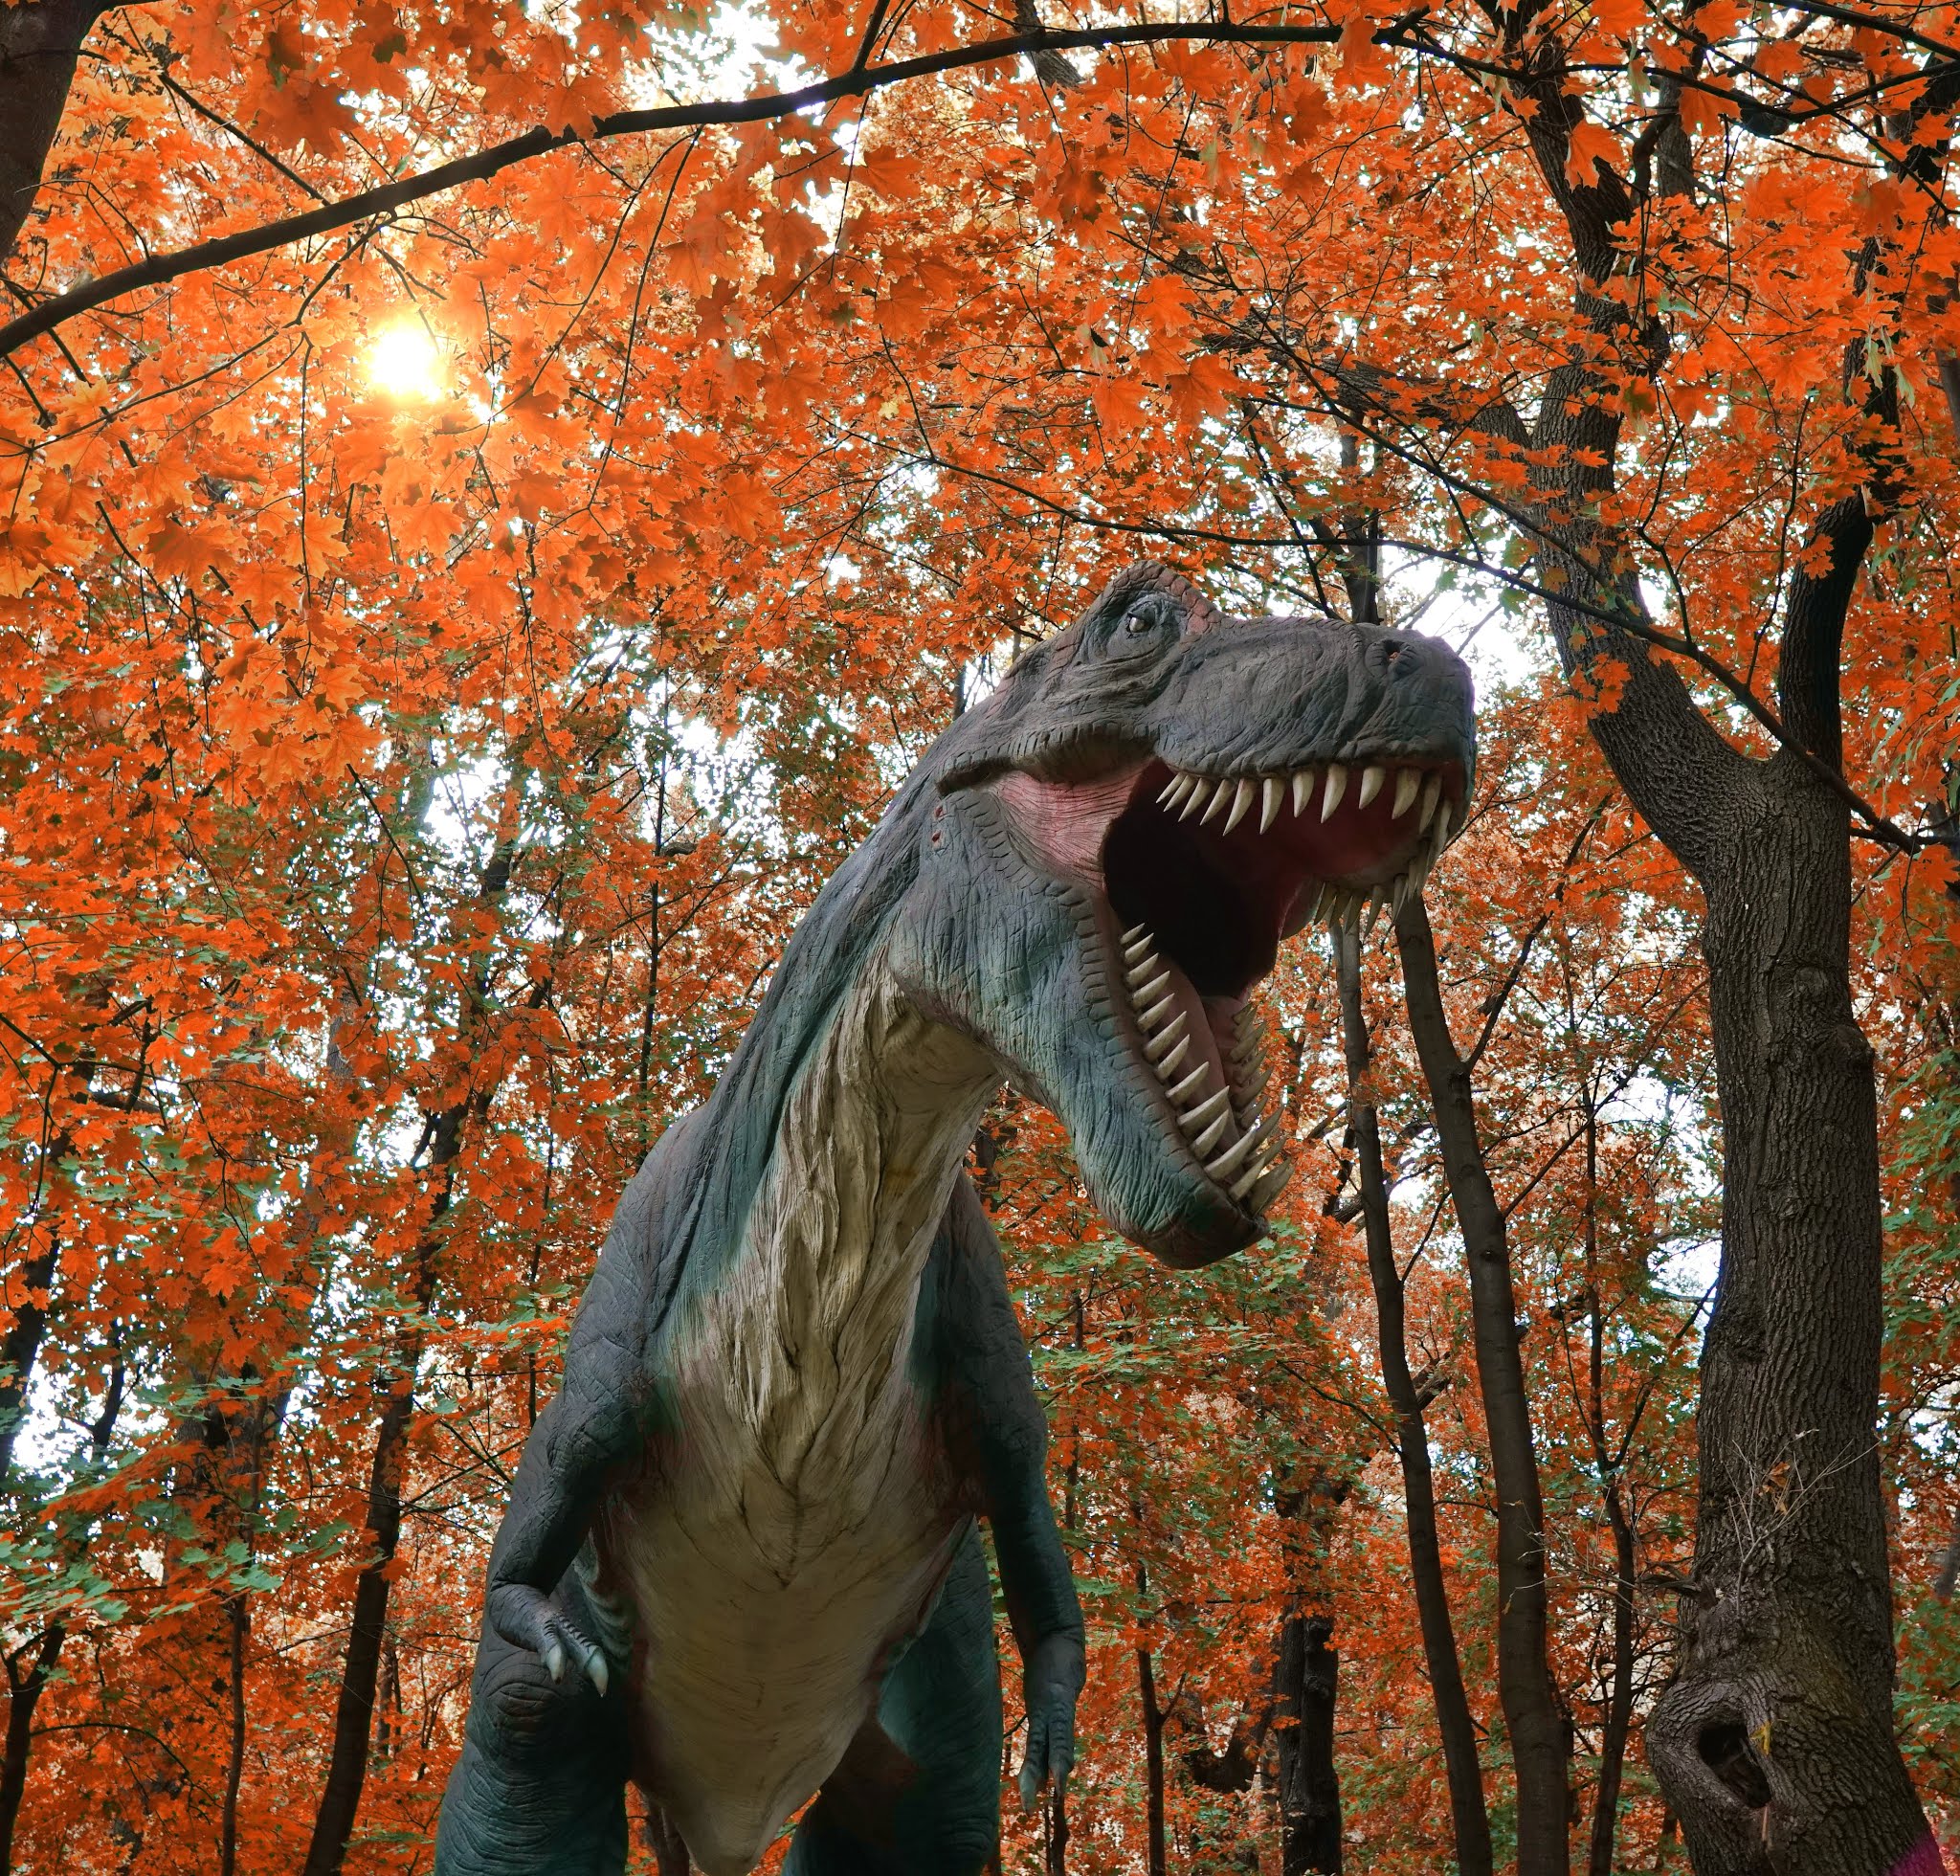 Zatorland w Zatorze - park rozrywki z ruchomymi dinozaurami, ogromnymi owadami, mitycznymi stworzeniami i klasycznym lunaparkiem.